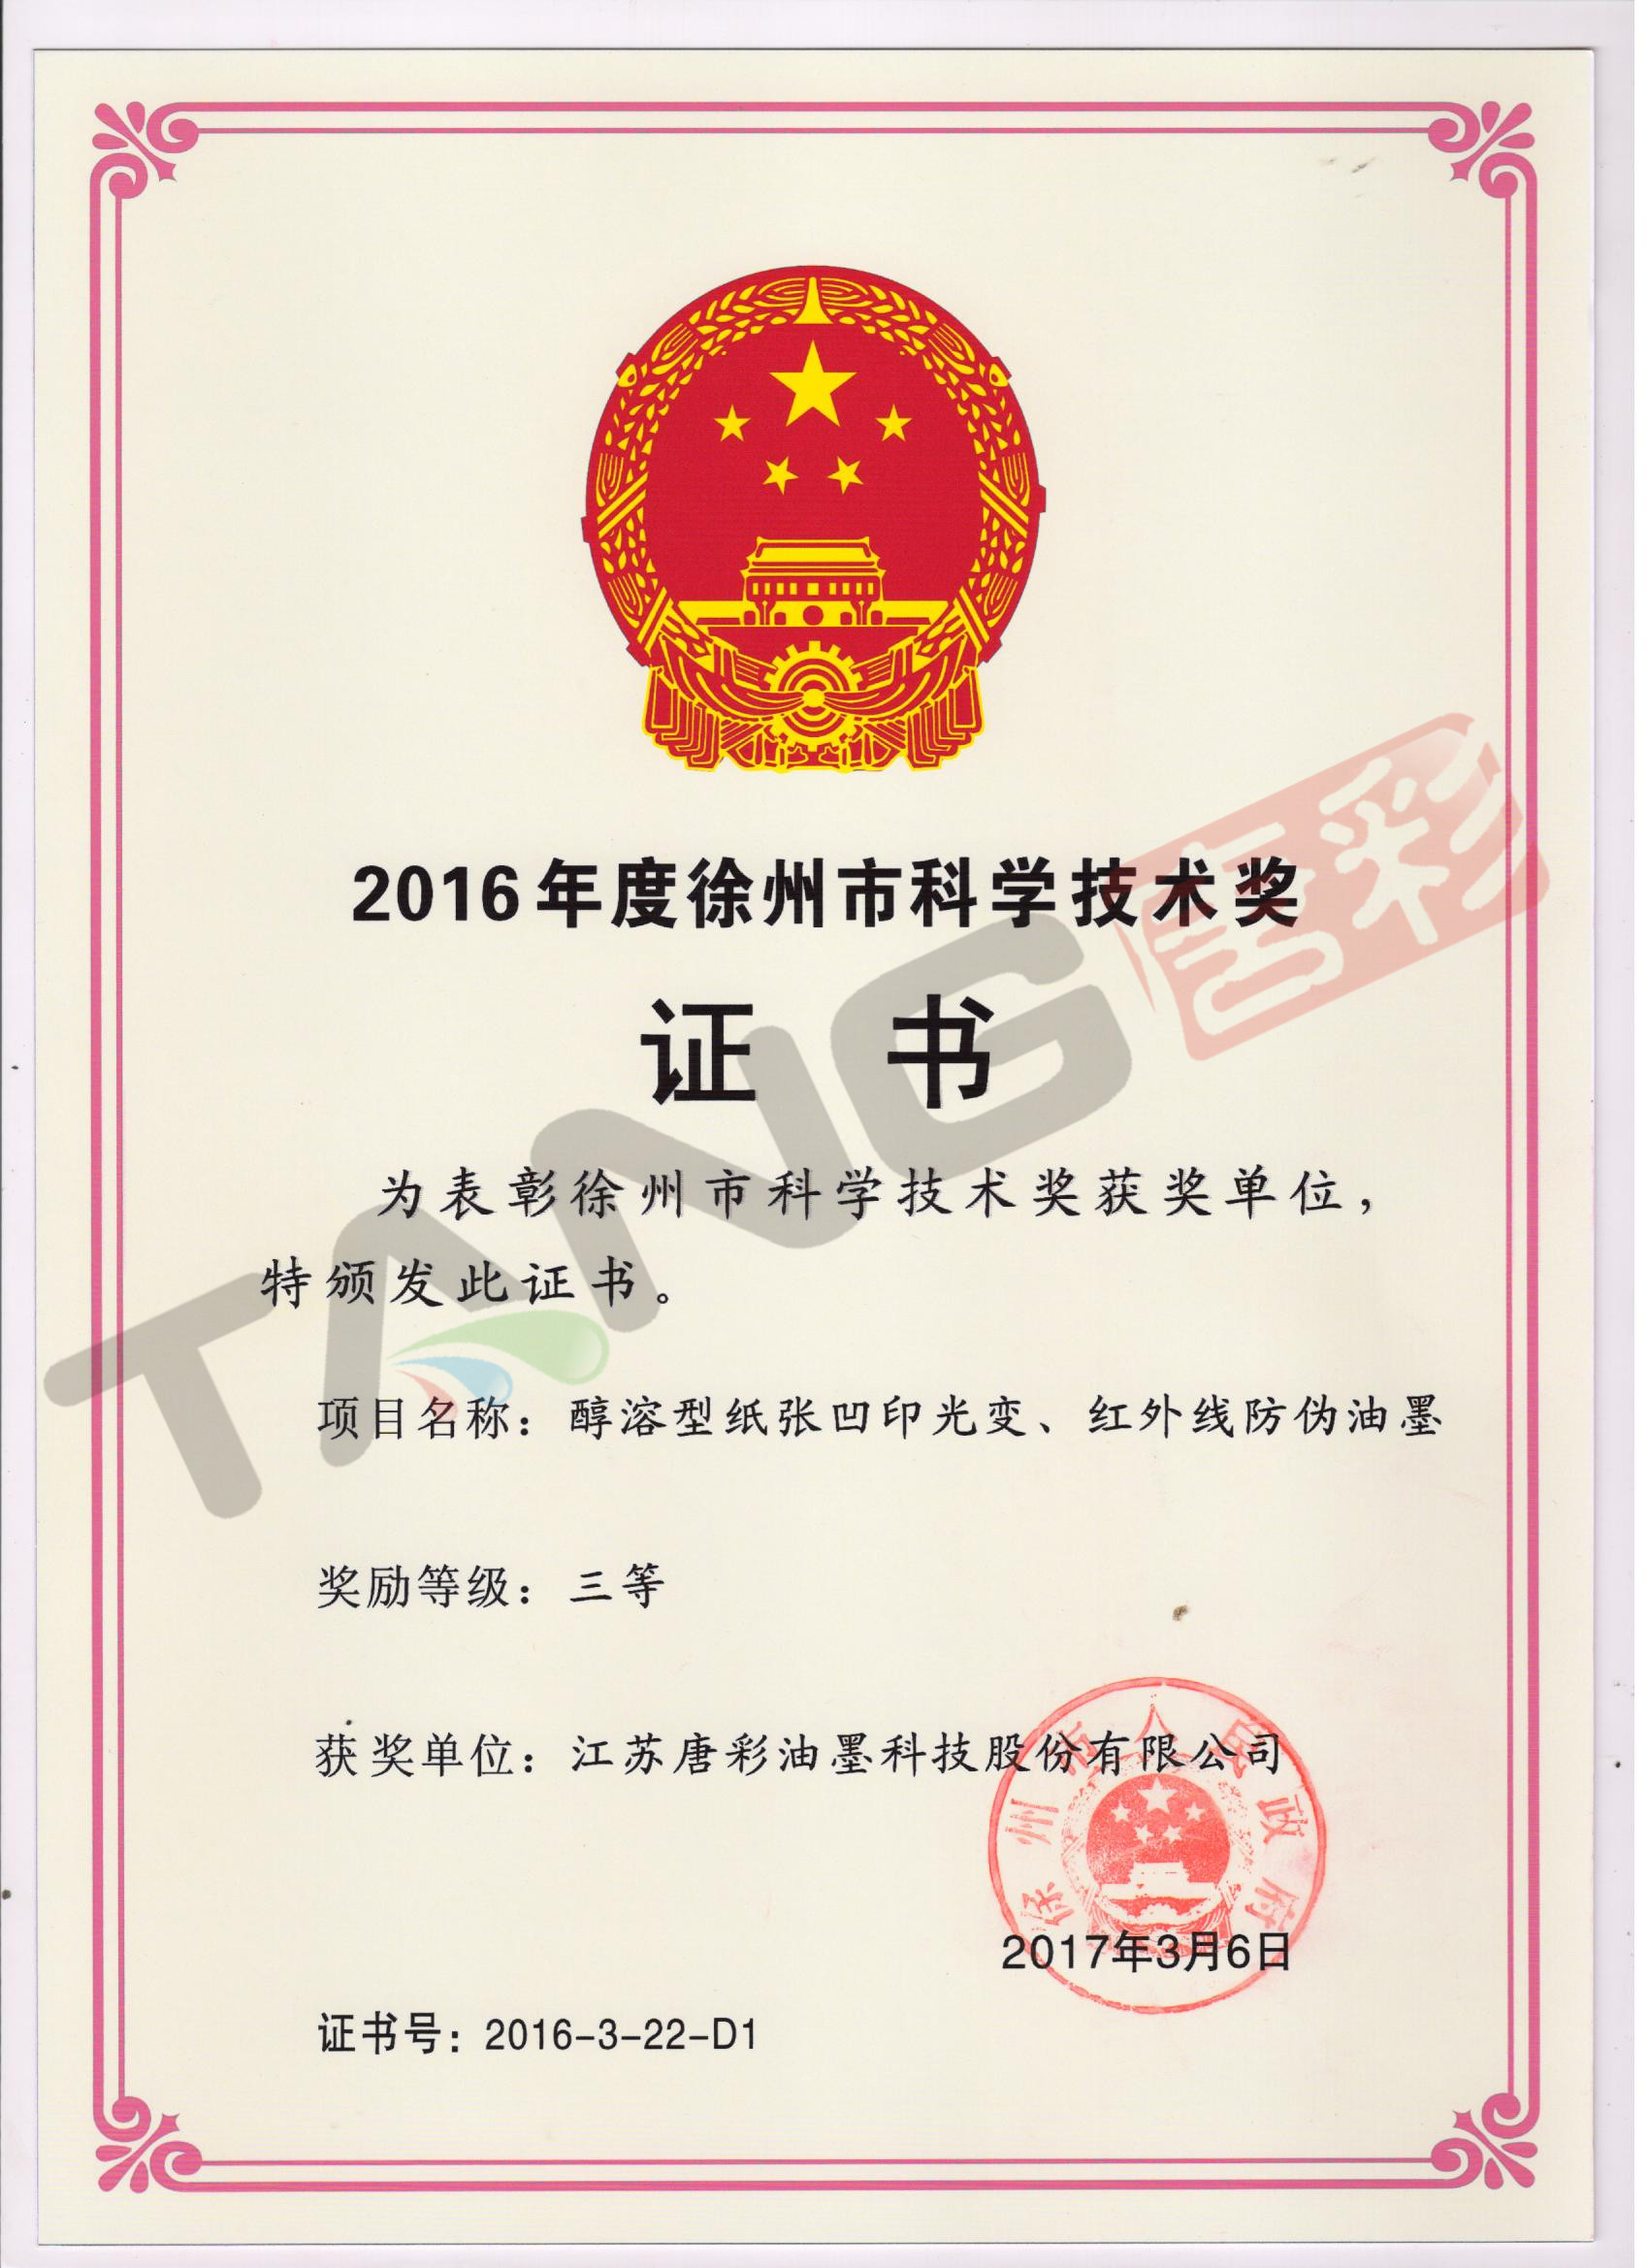 热烈祝贺我司荣获徐州市科学技术奖